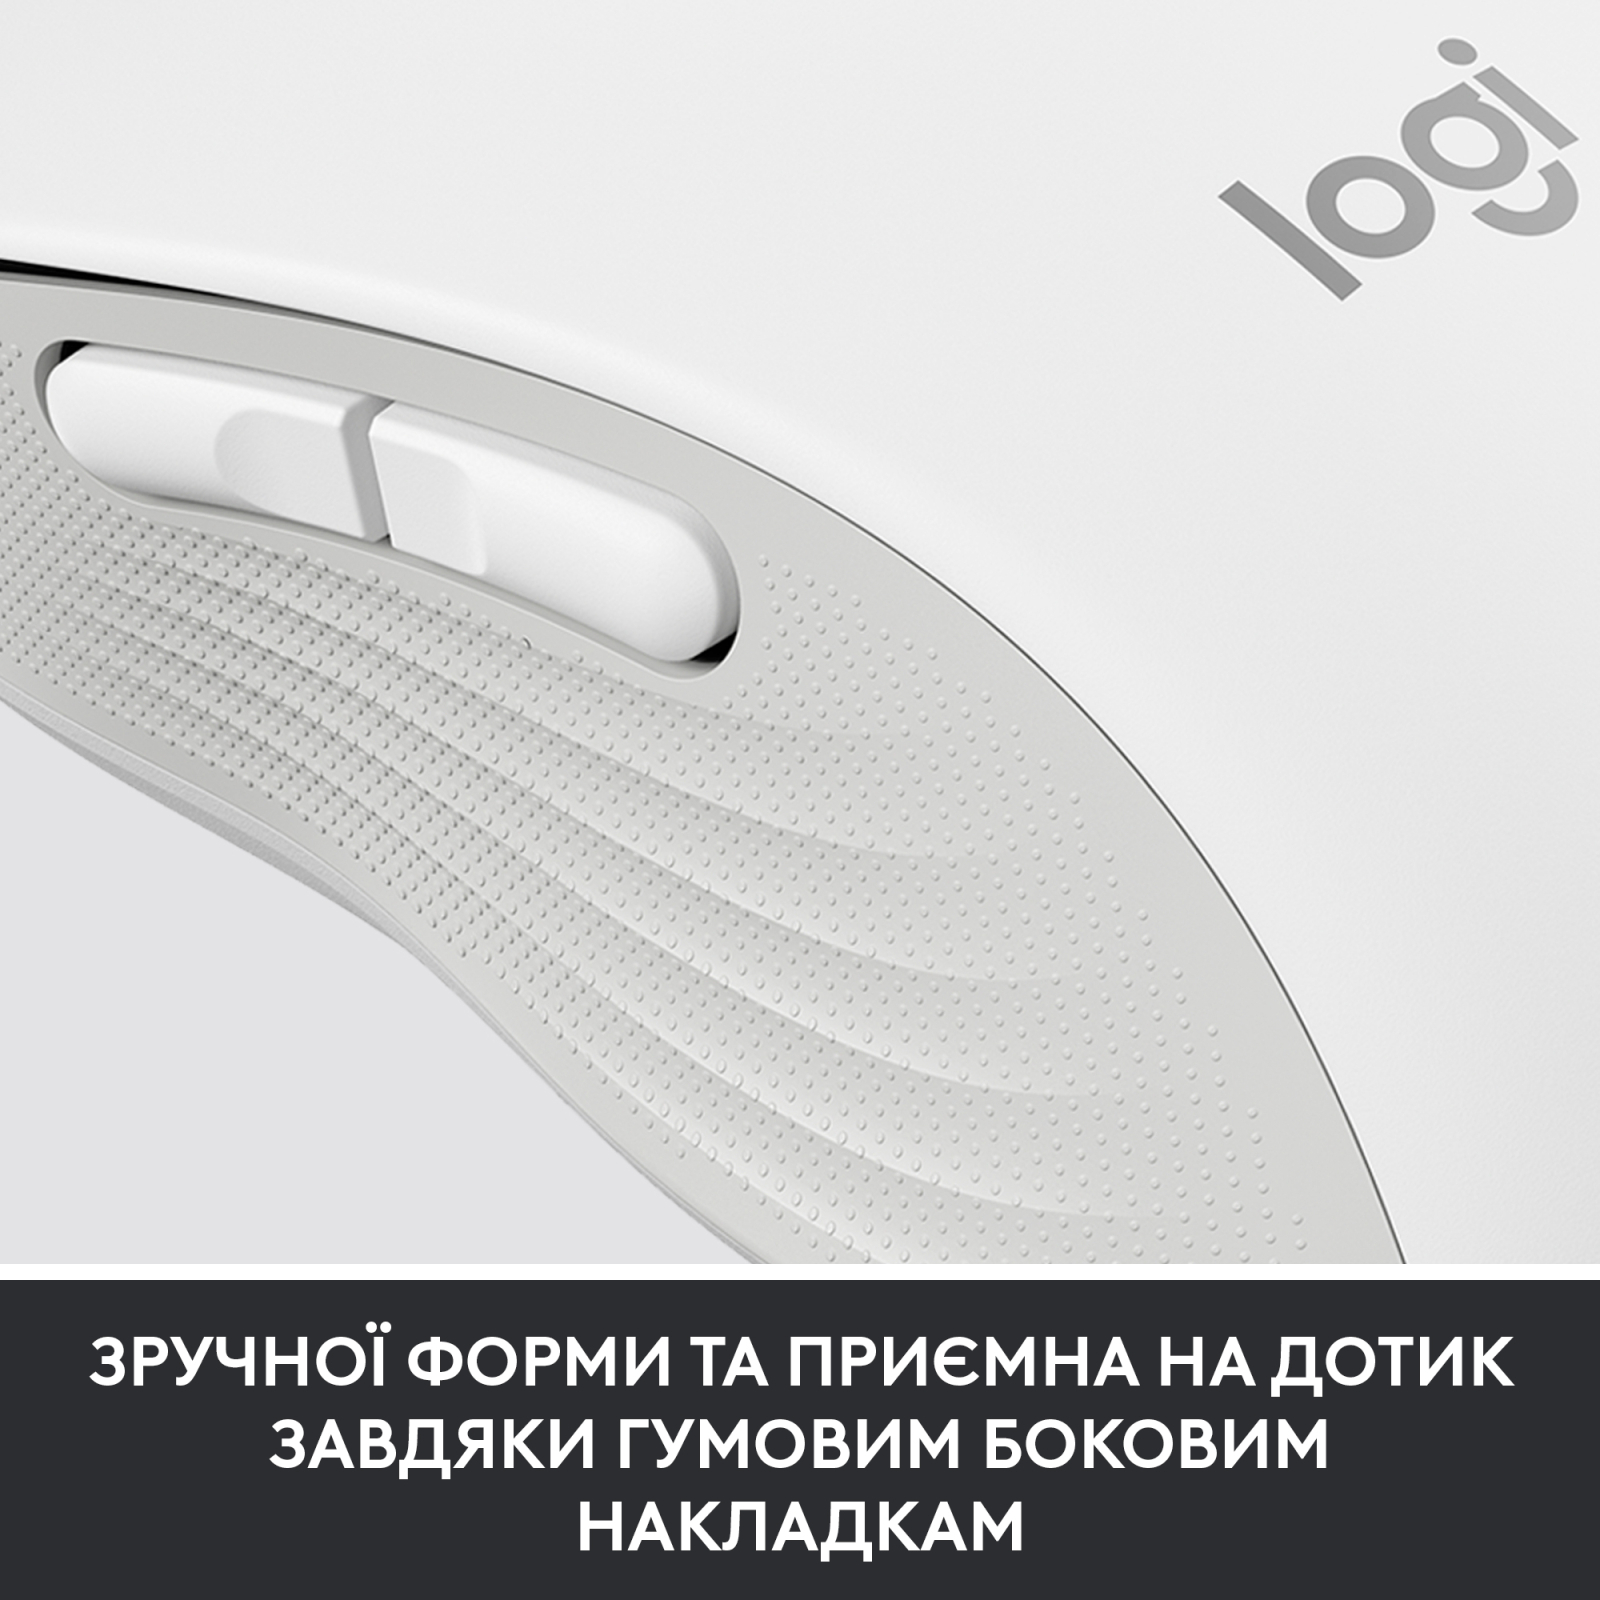 Мышка Logitech Signature M650 Wireless for Business Graphite (910-006274) изображение 8